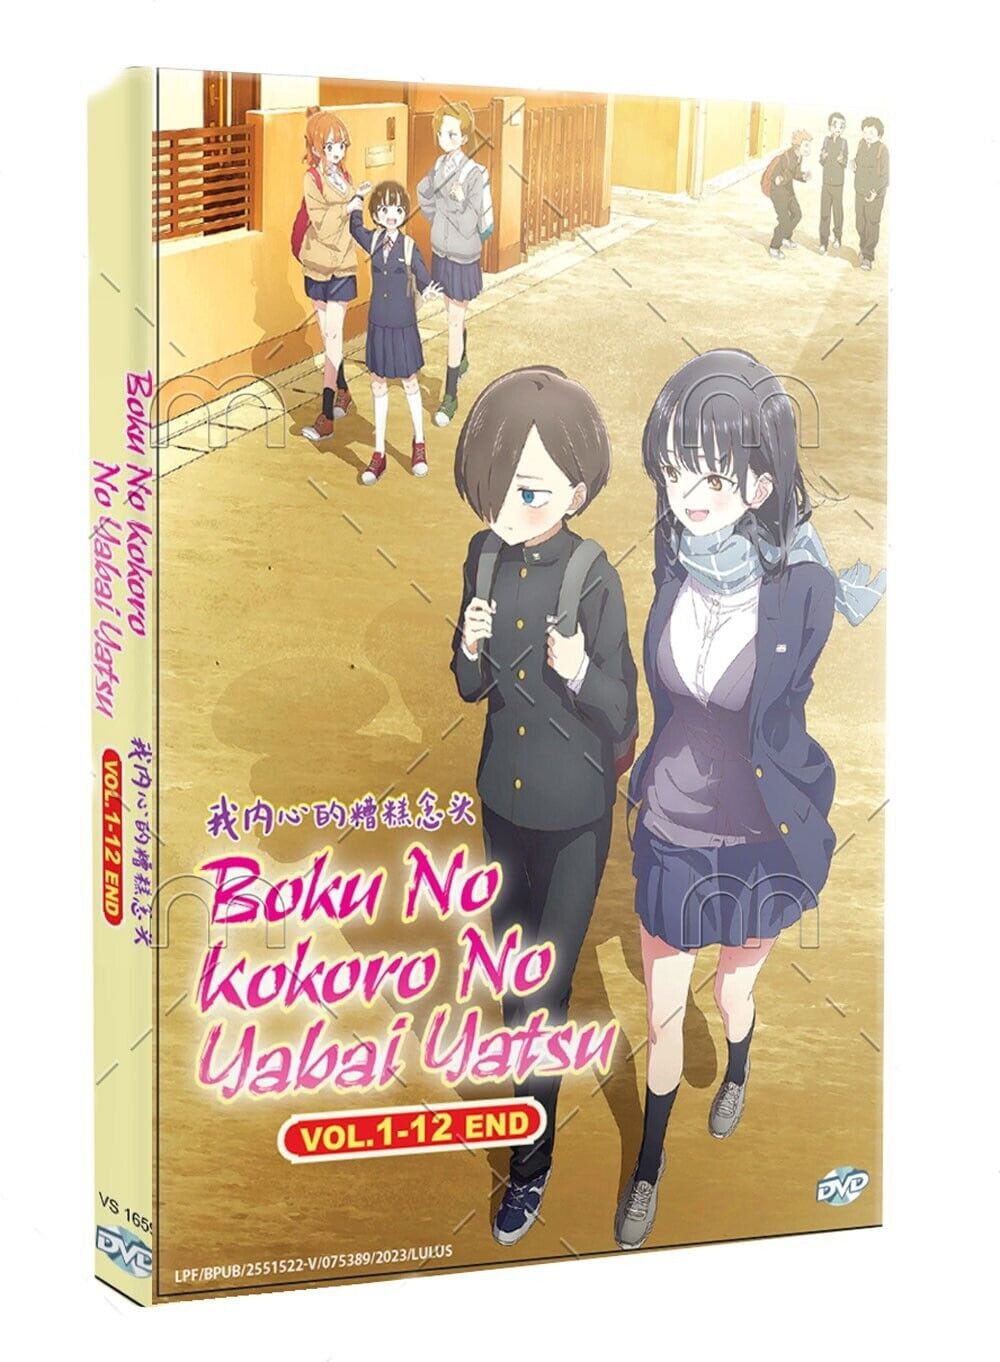 Boku no Kokoro no Yabai Yatsu vol.1-8 set Japanese Boys Comics Manga Book  New